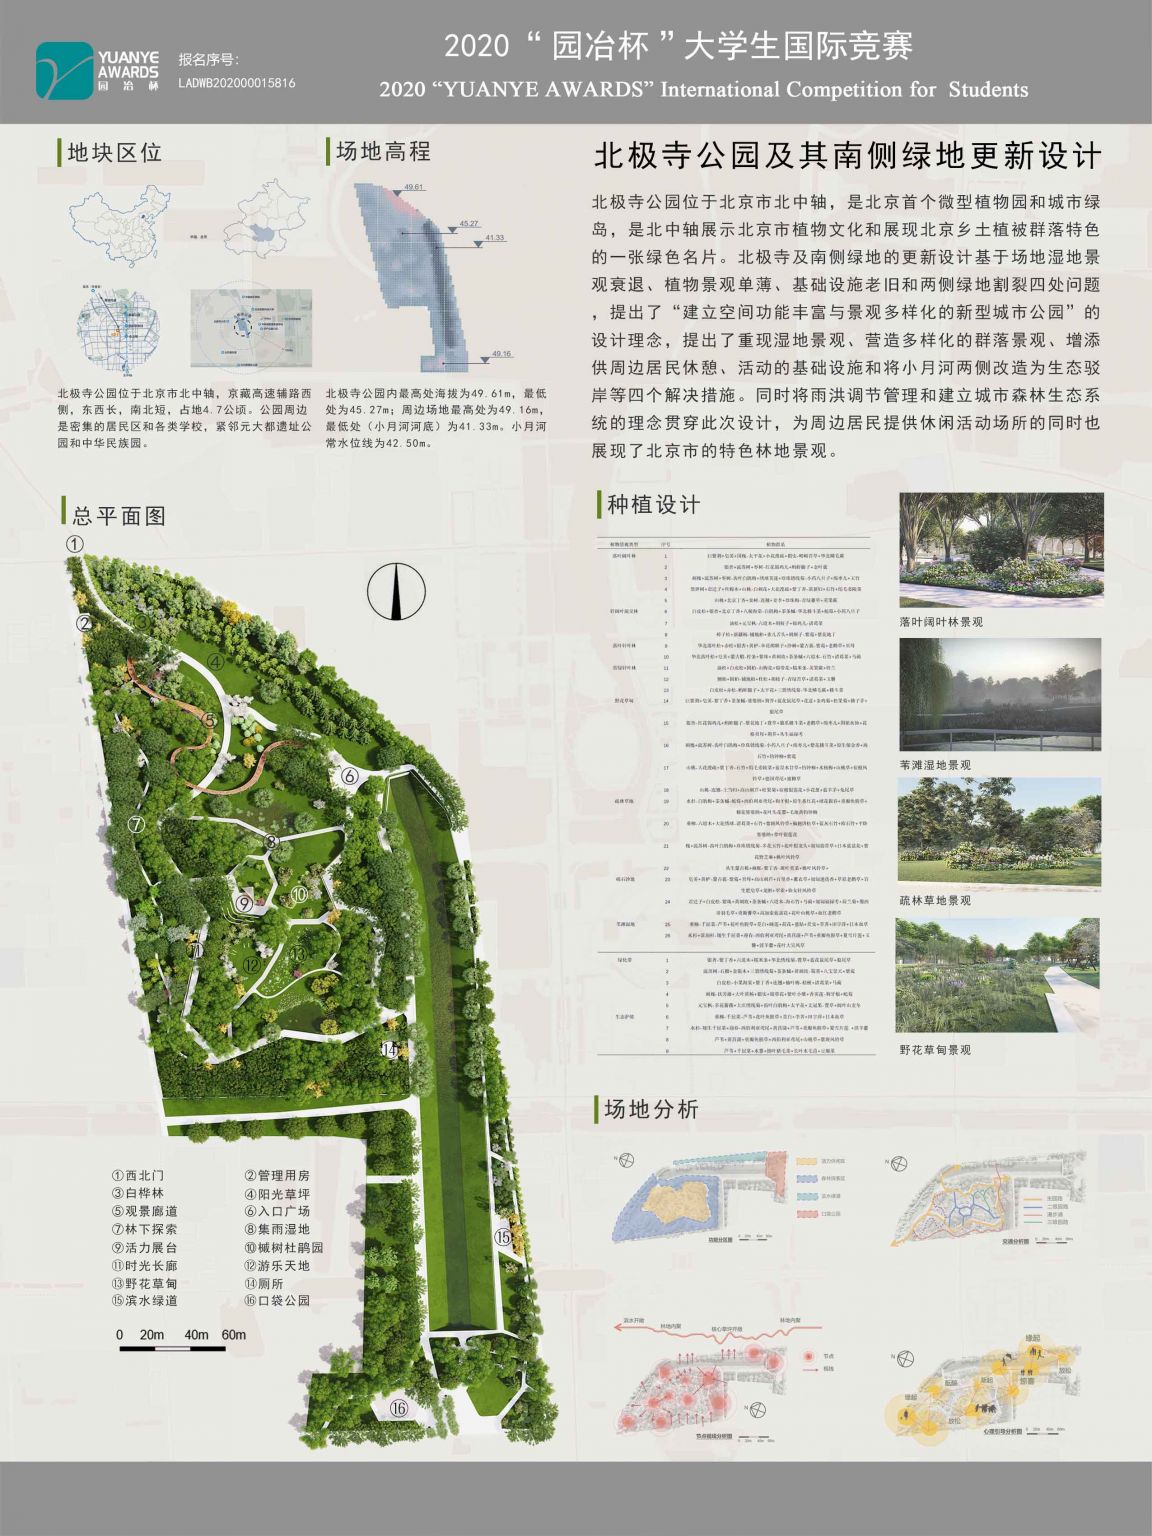 北极寺公园 四环边隐匿的微型植物园_北京日报APP新闻